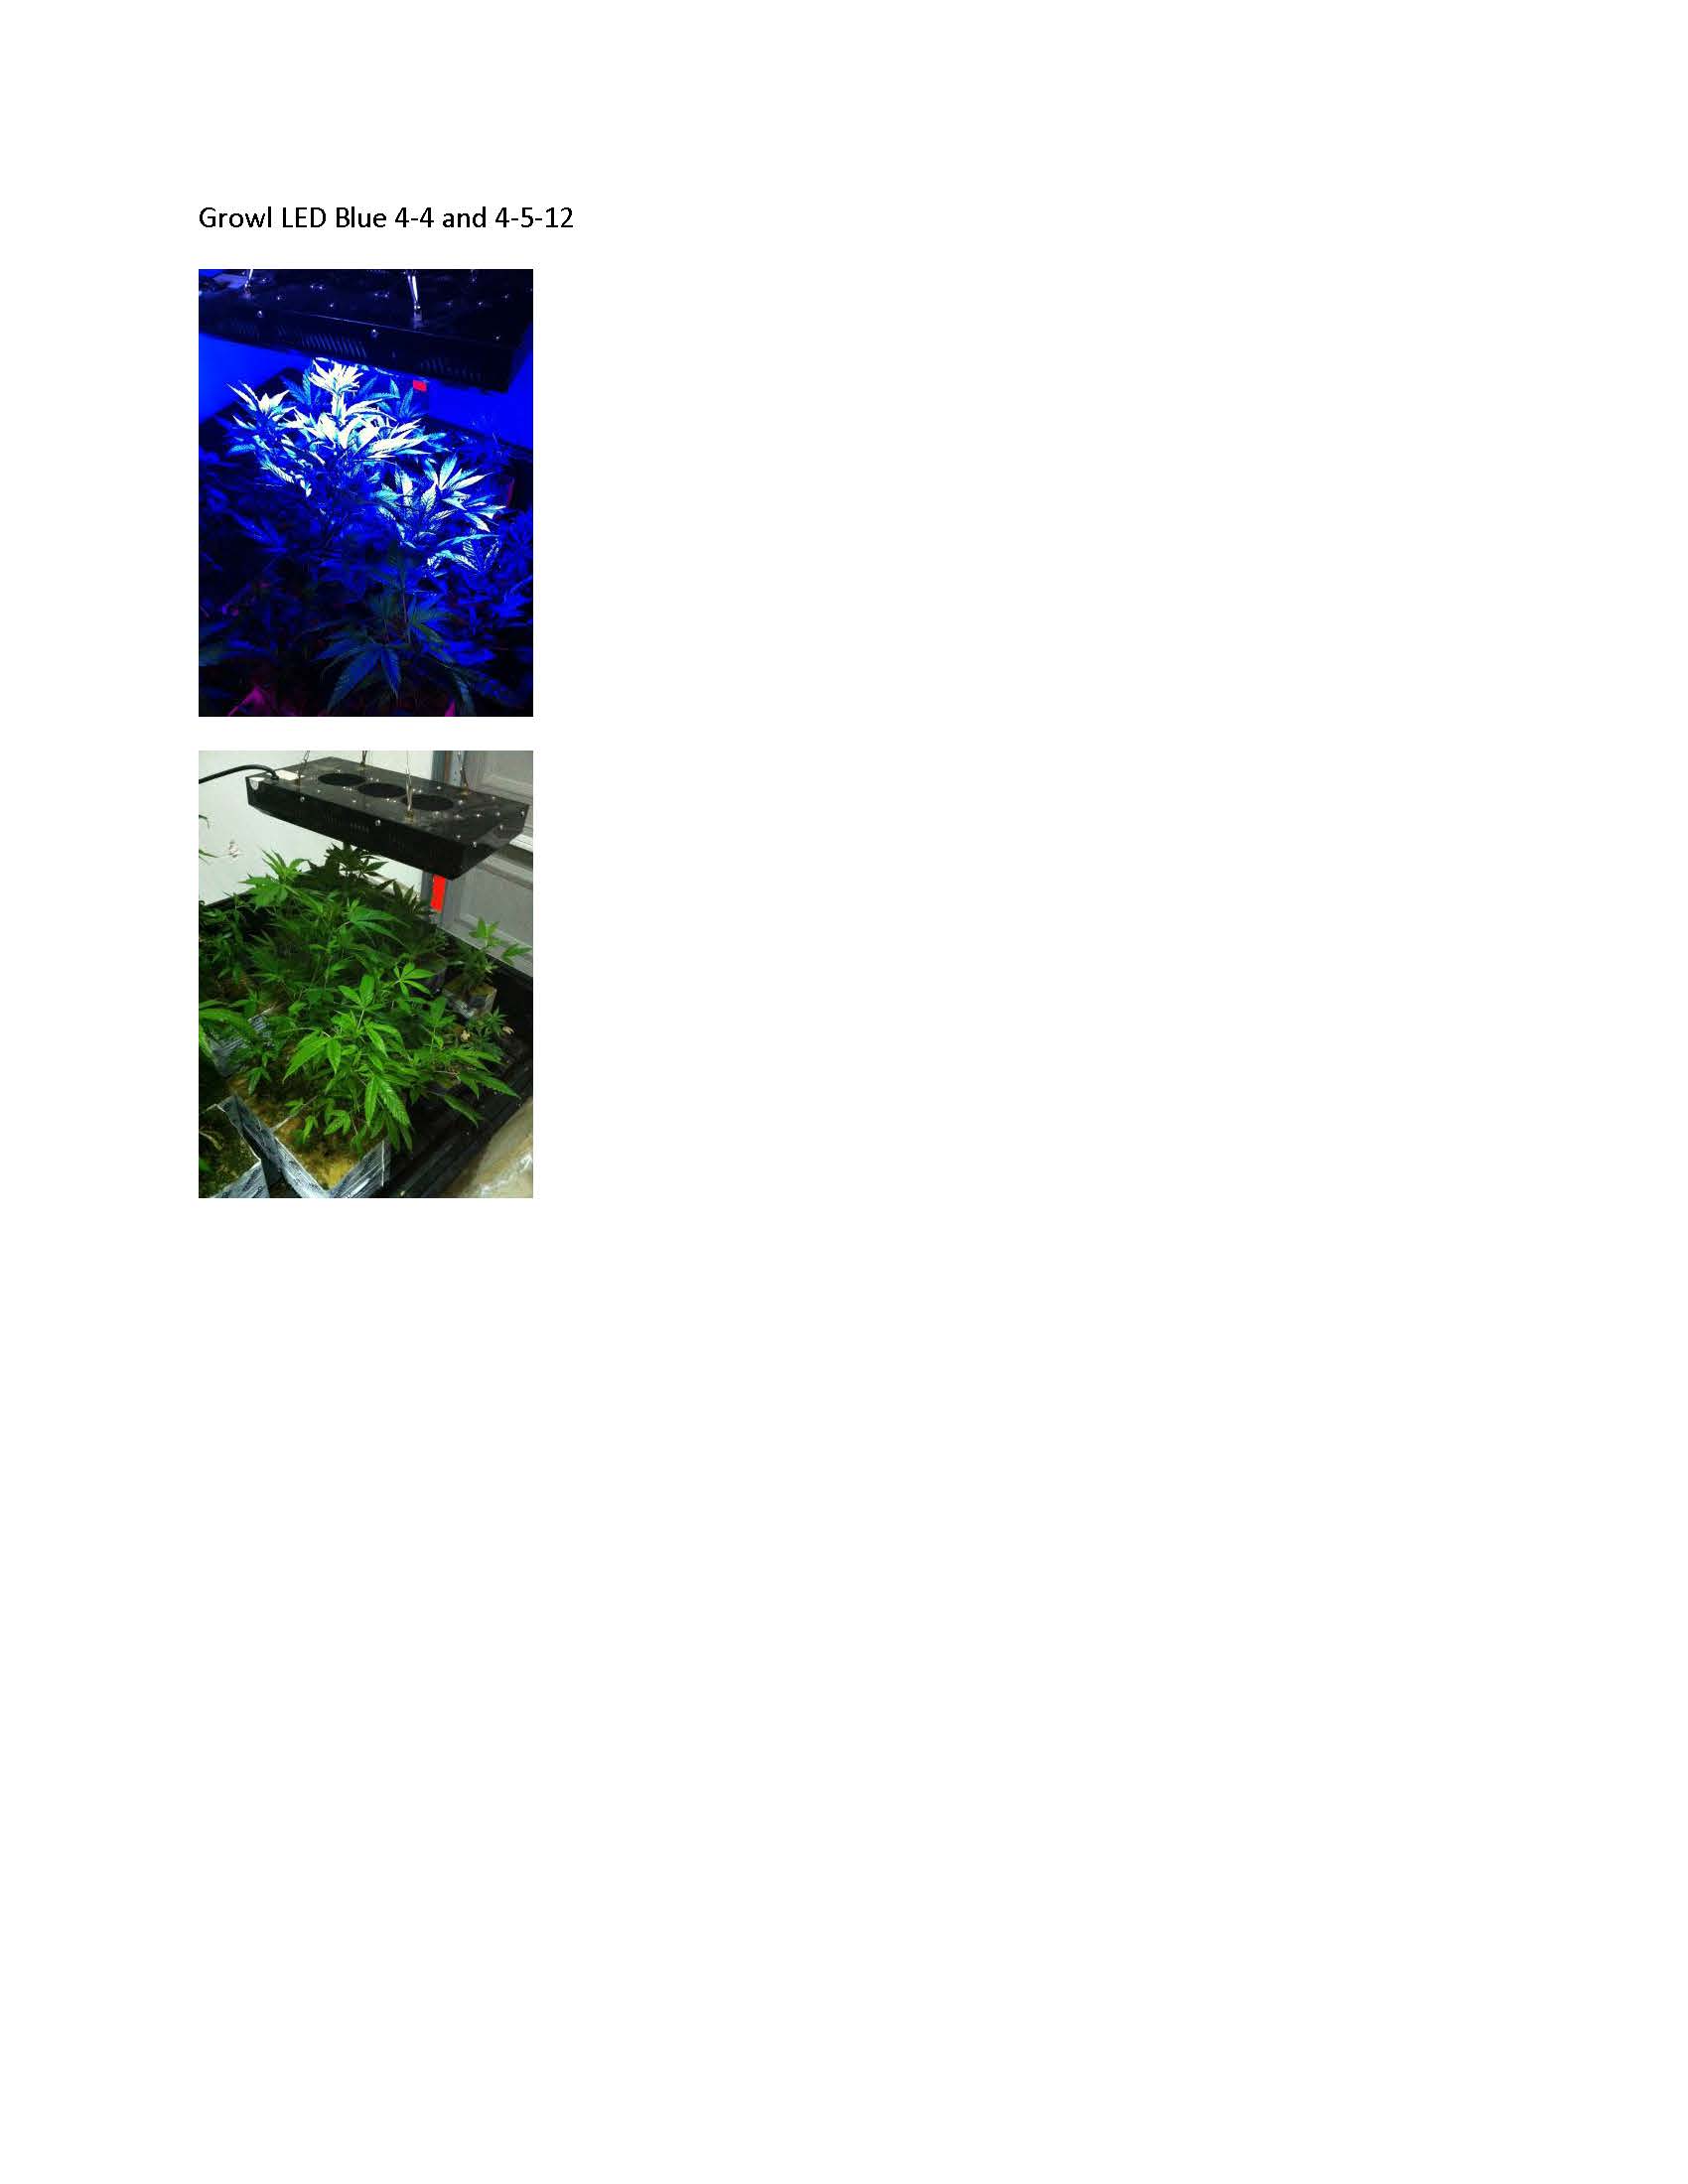 Growl Blue LED 4-4.jpg